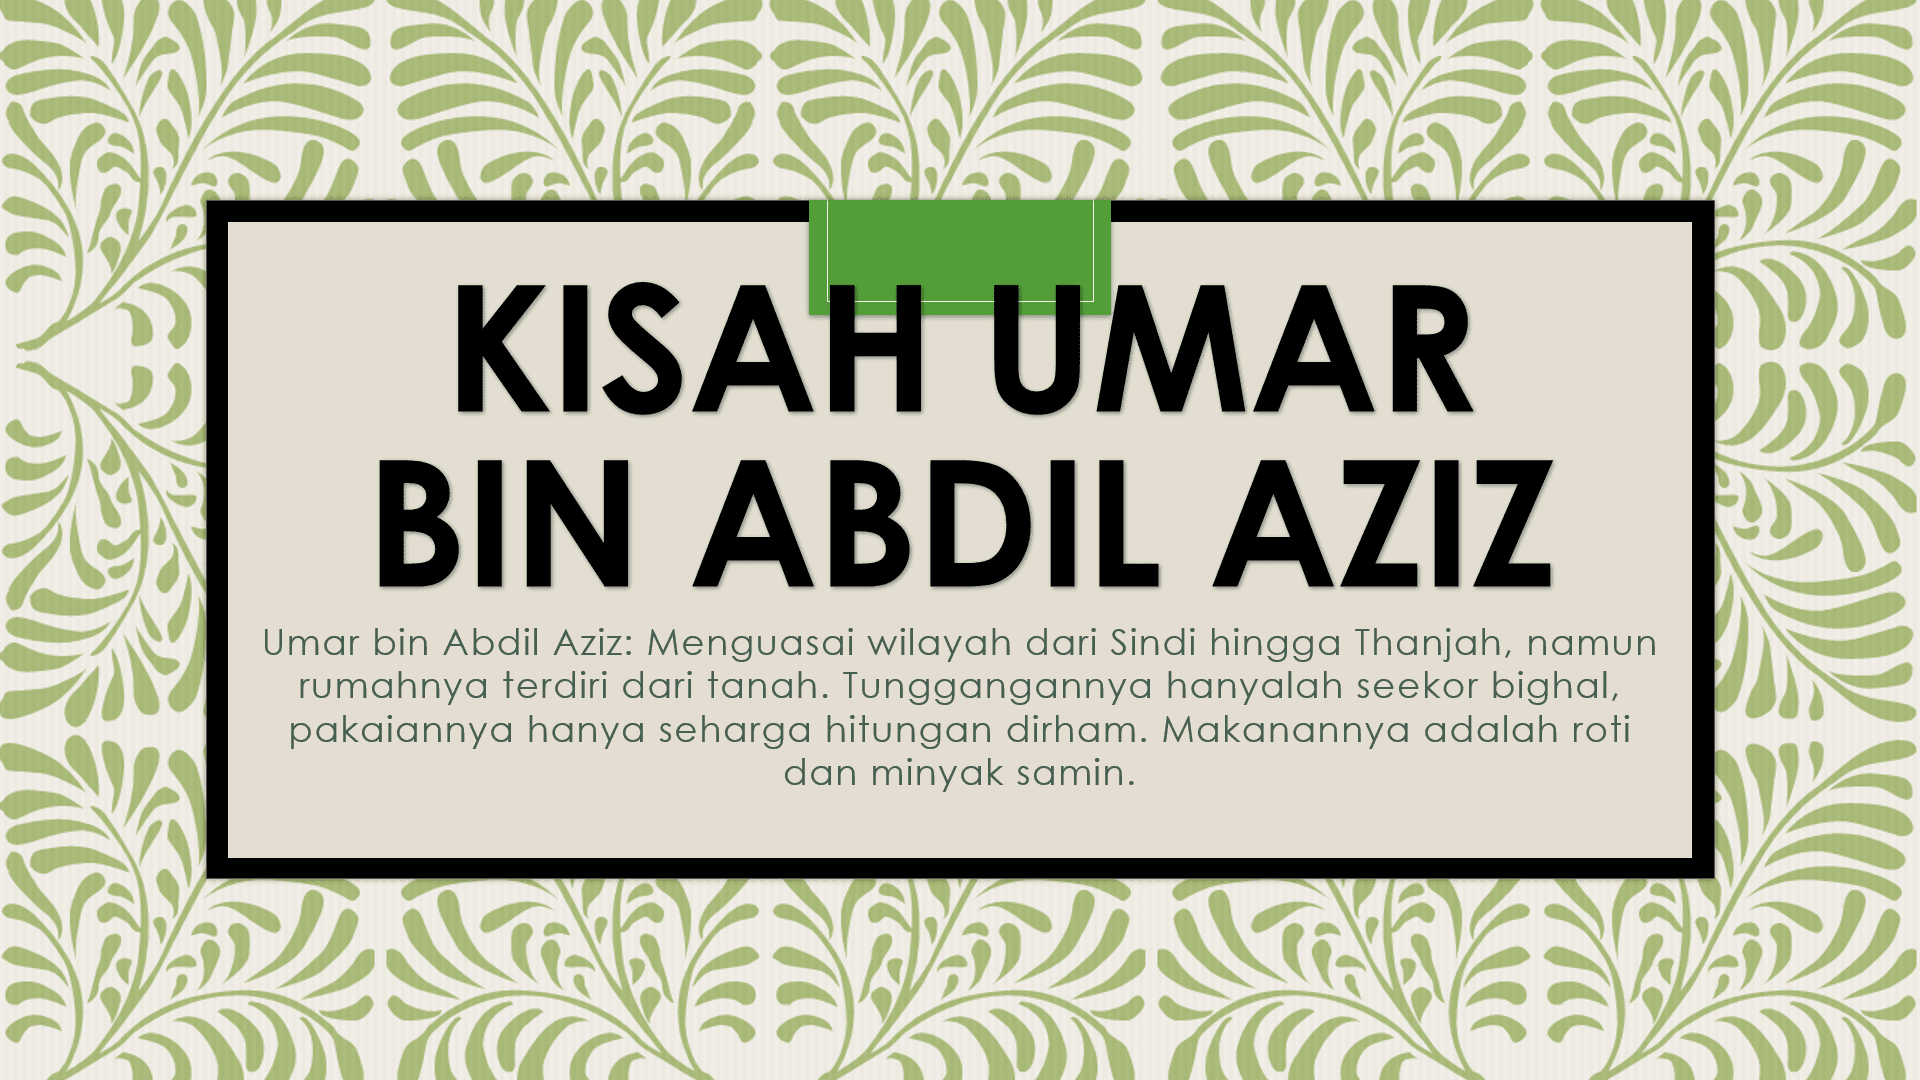 Kisah Umar bin Abdil Aziz